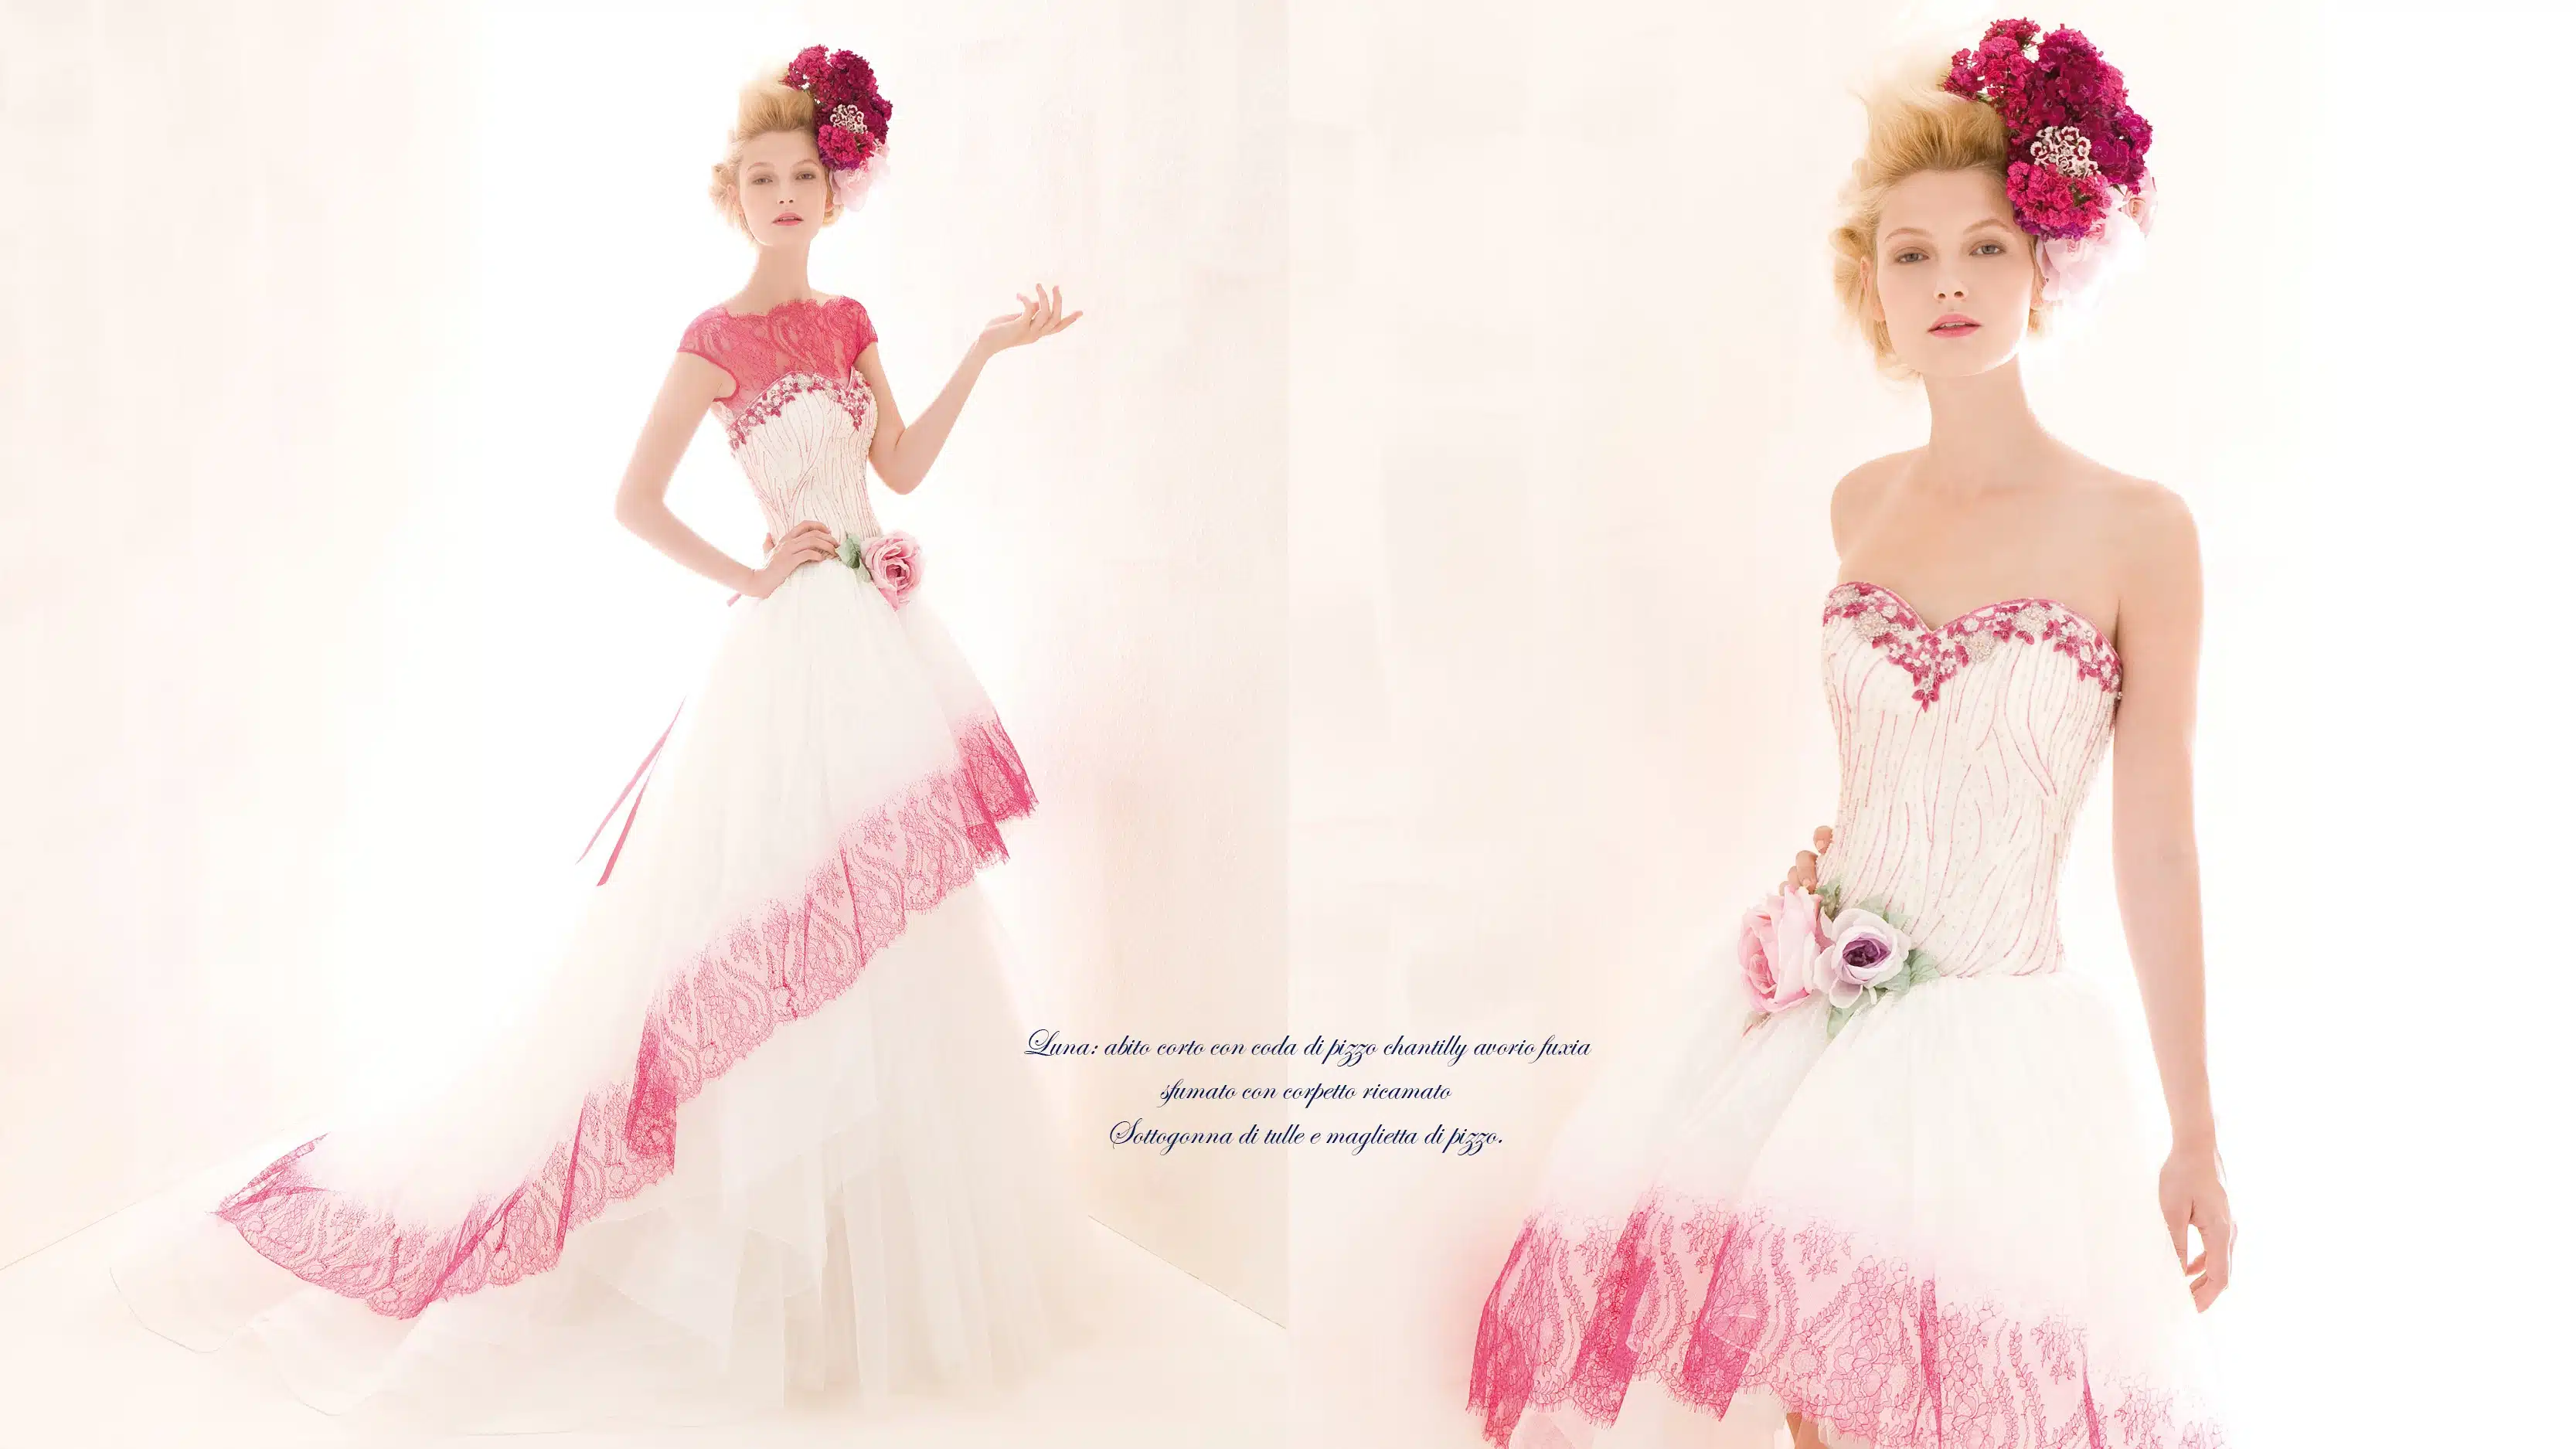 Offrez-vous de magnifiques robes de mariée sur mesure sur Persun.fr